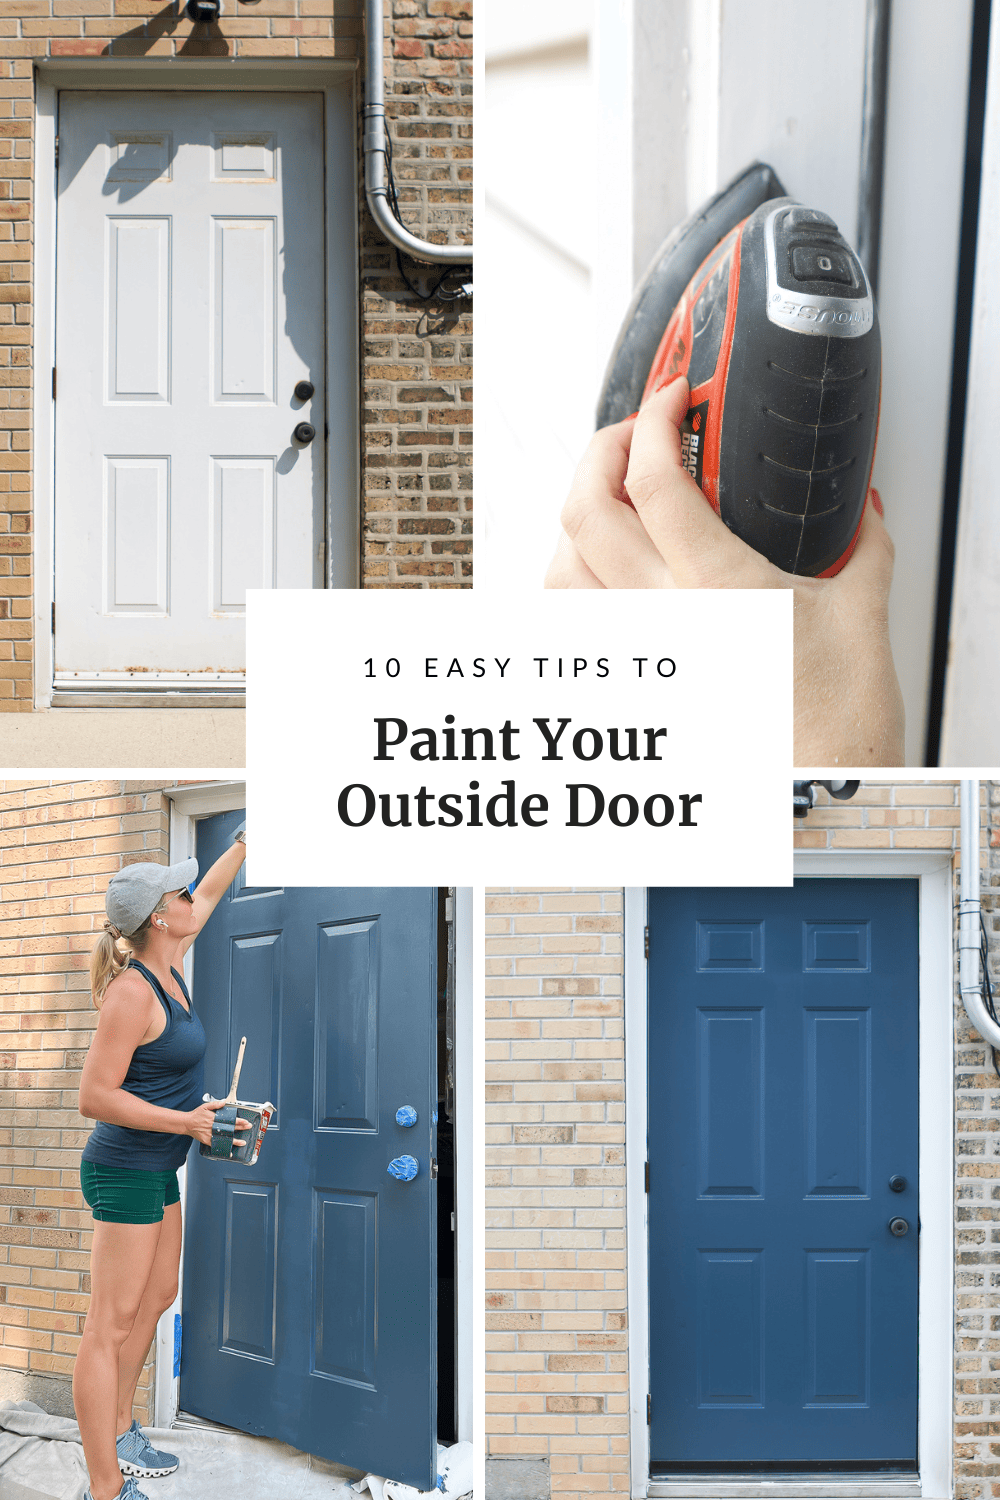 My best tips to paint an exterior door